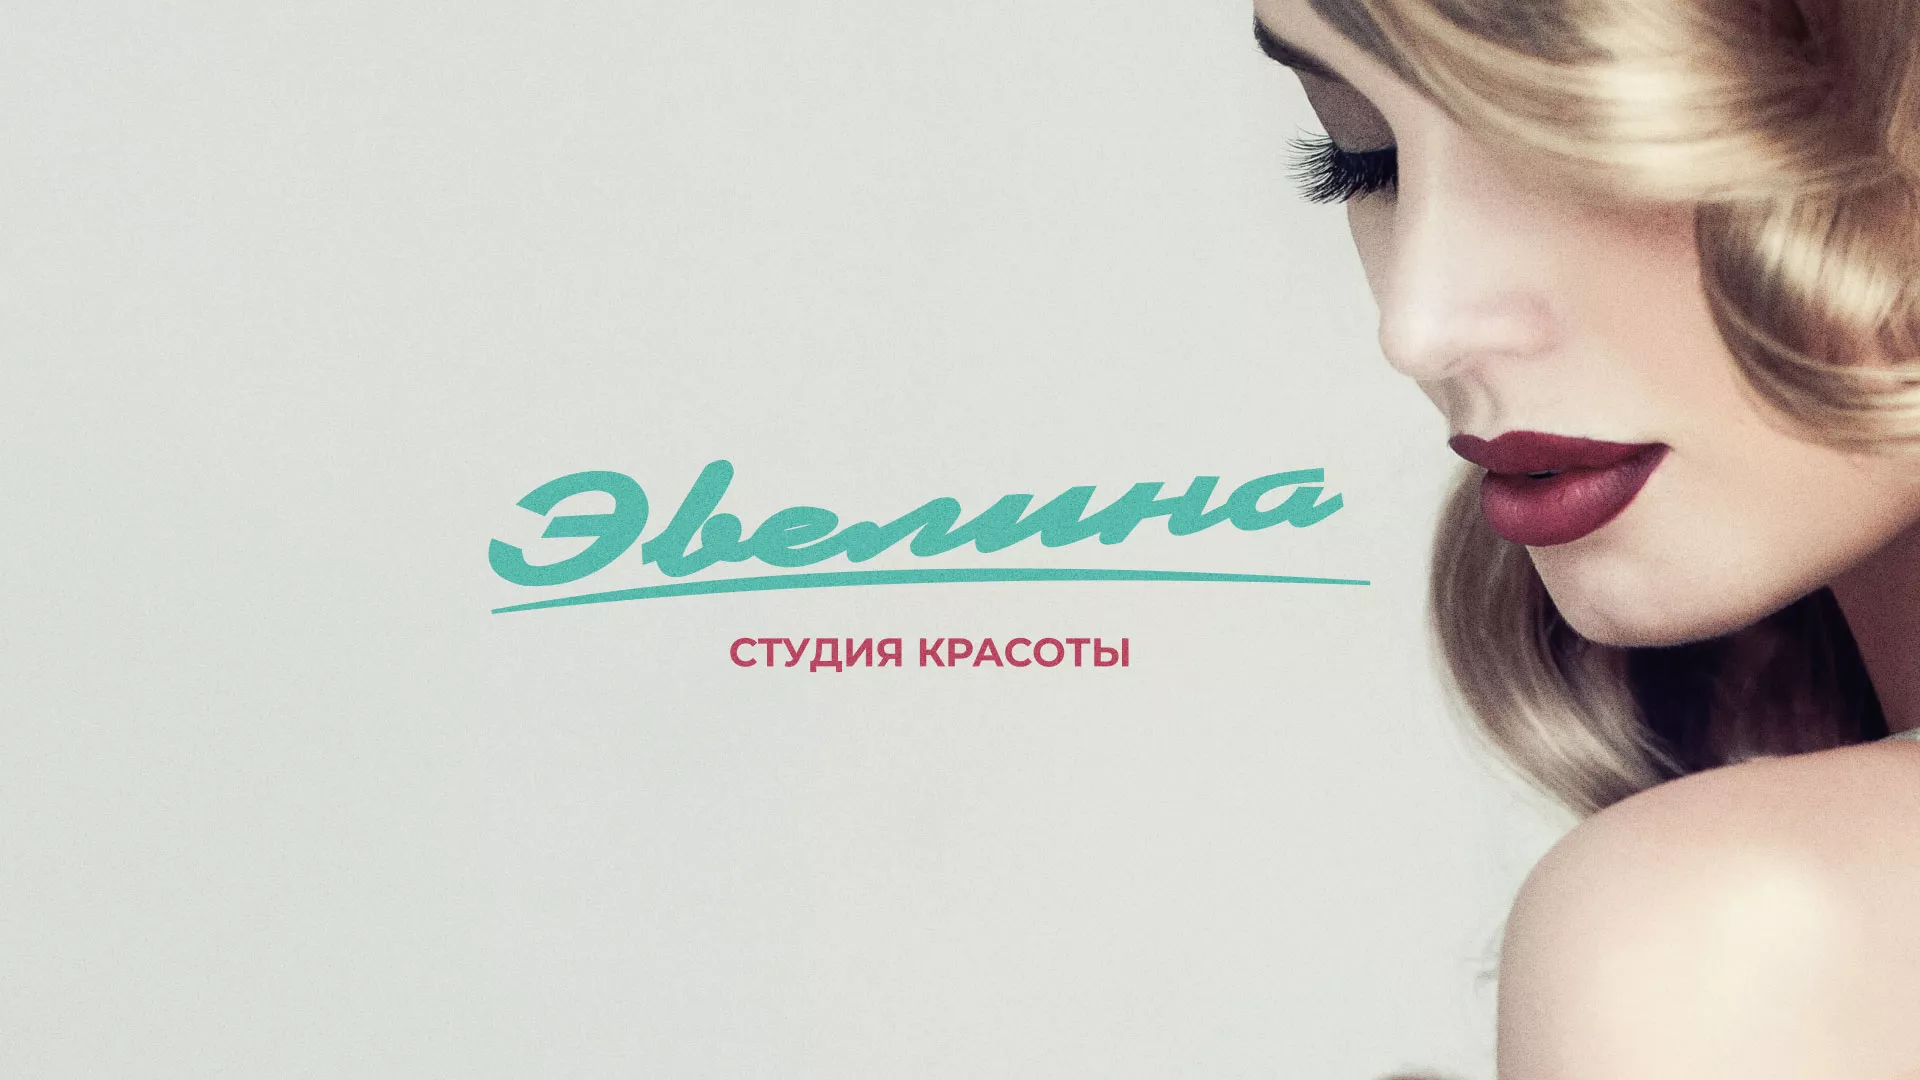 Разработка сайта для салона красоты «Эвелина» в Алексеевке